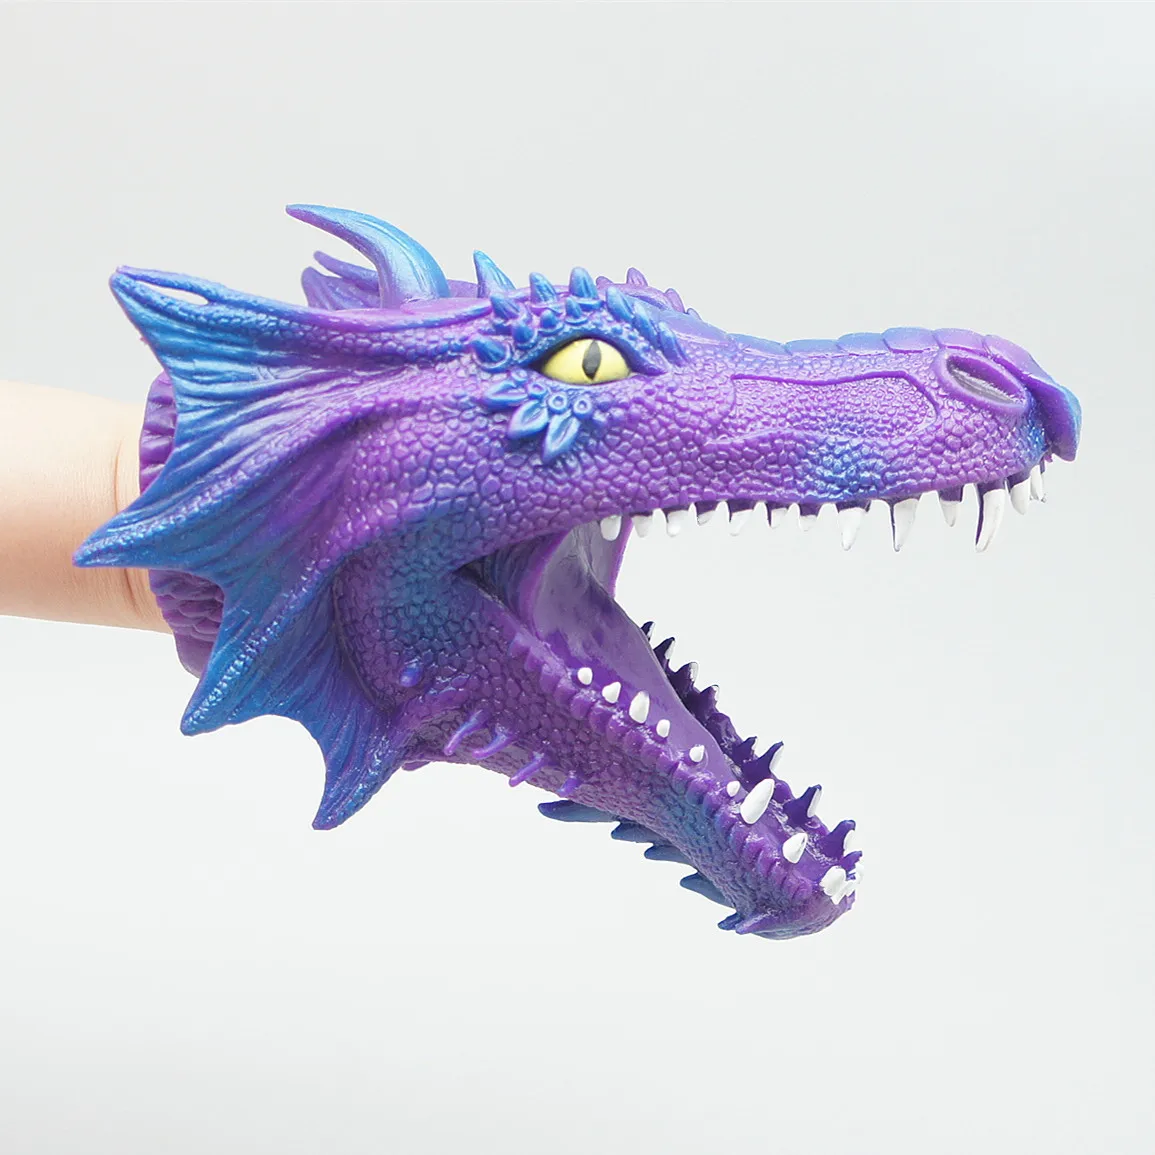 Fantoche animal de plástico de alta qualidade antigo dragão voador chinês brinquedos atacado OEM fantoche de mão dragão chinês